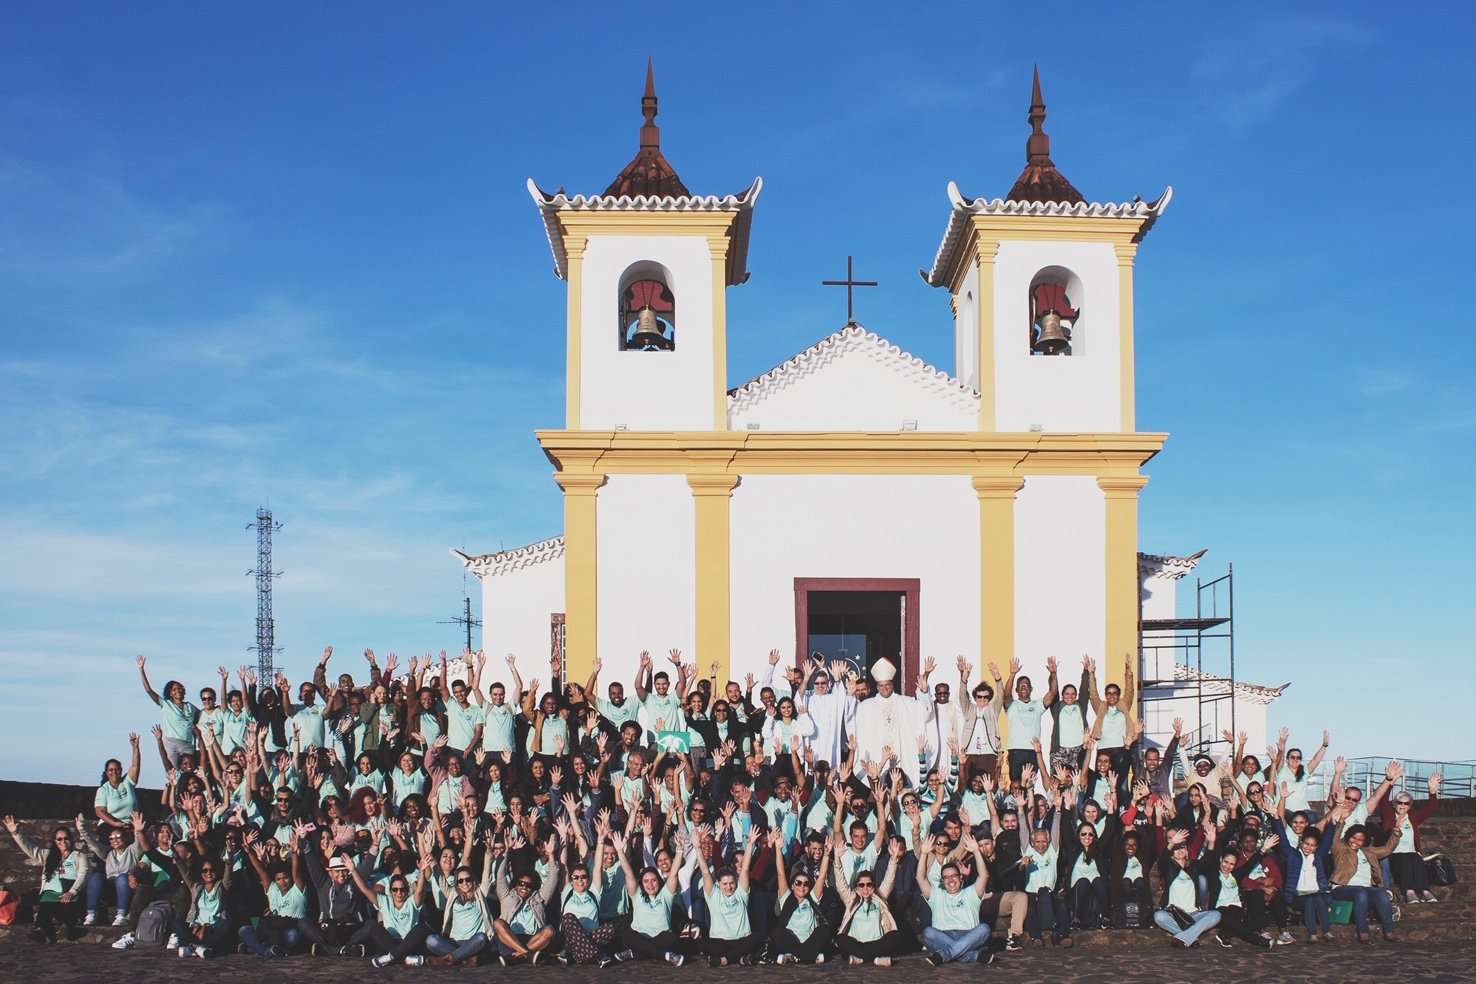 Colaboradores da Providens participam de Encontro no Santuário da Padroeira de Minas